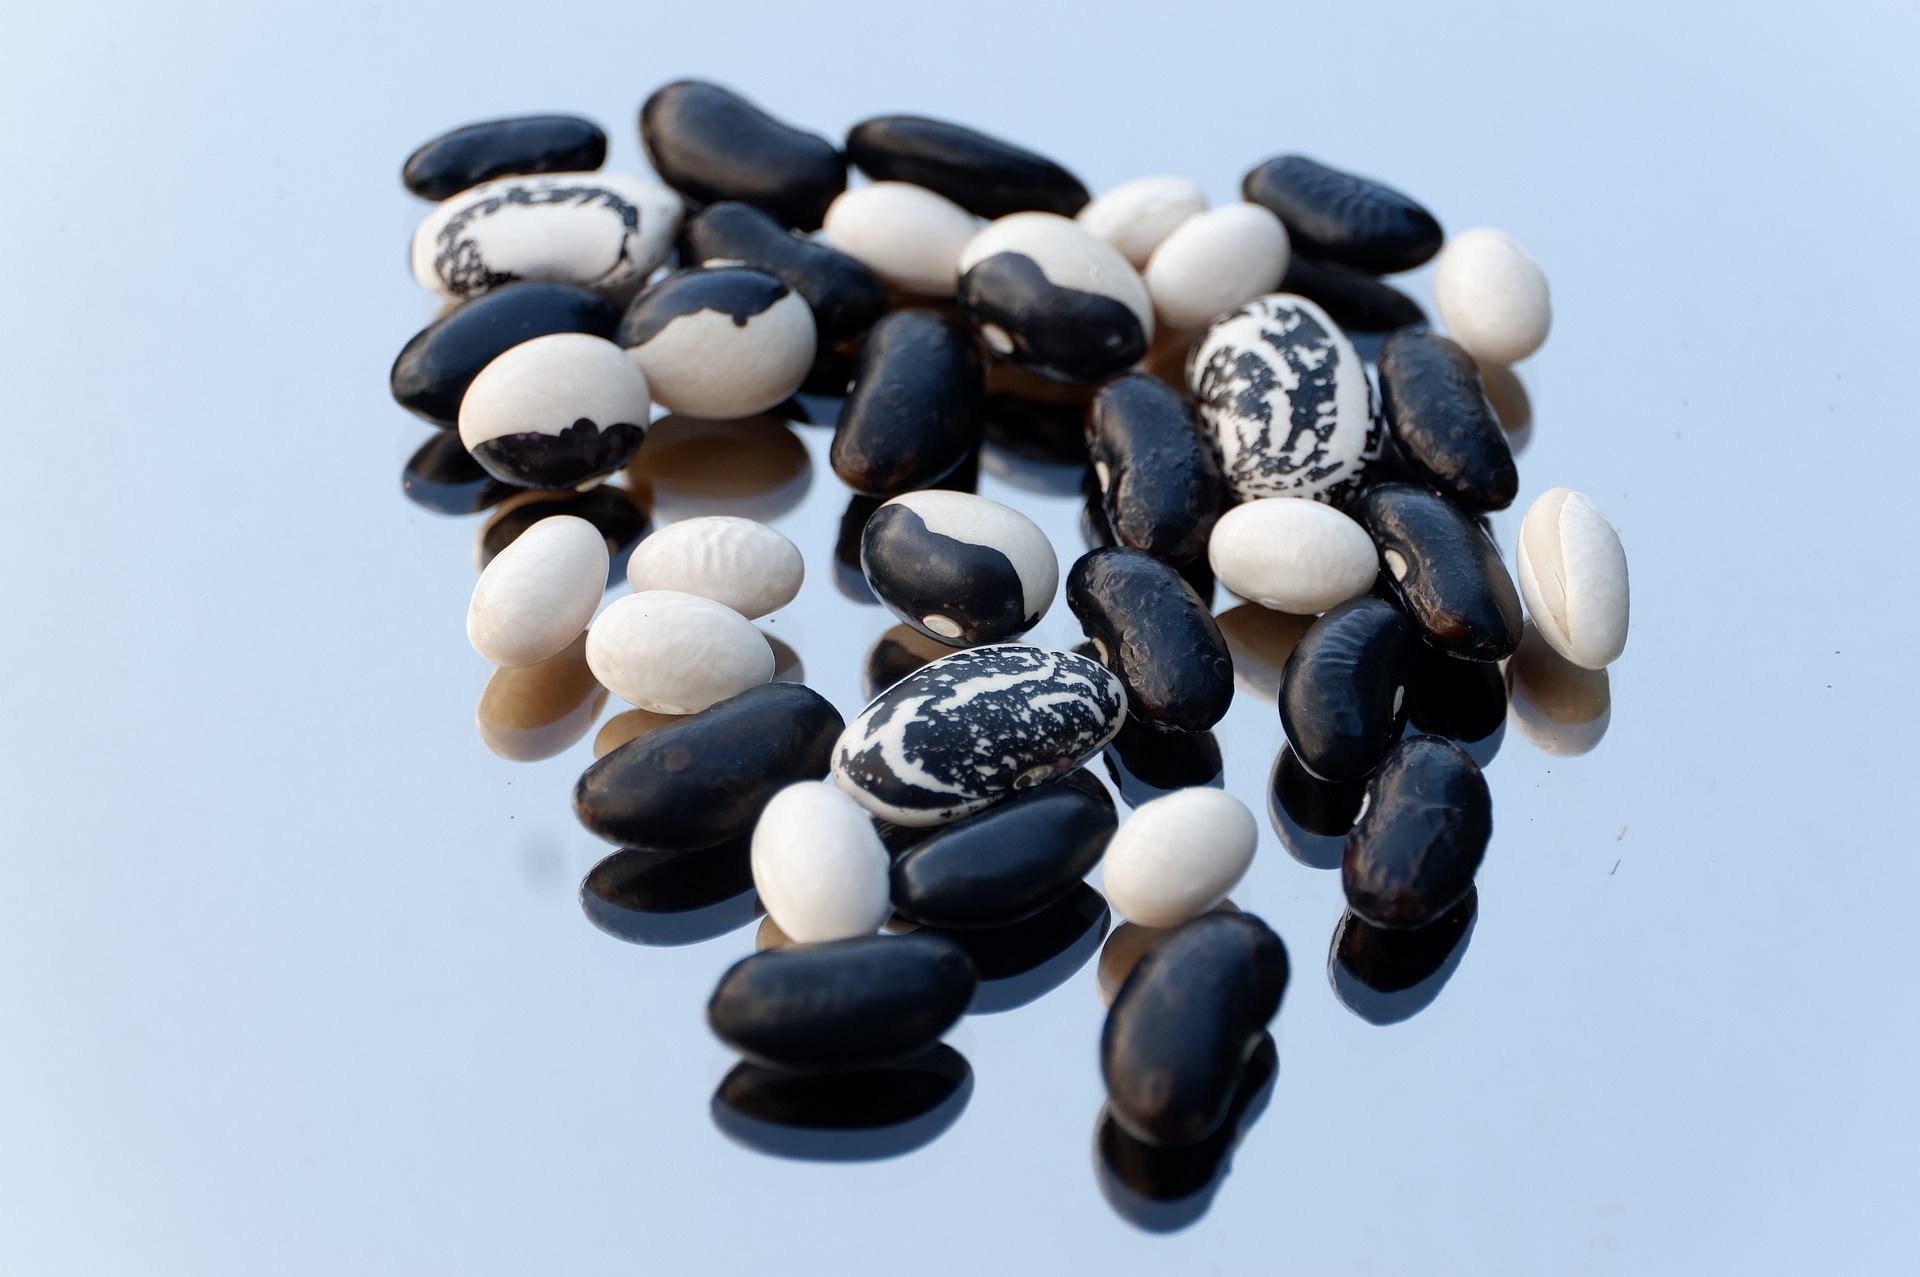 검은 콩과 흰콩&#44; 얼룩콩을 바닥에 쏟아 놓은 사진 - 태음인(太陰人)에게 맞는 음식